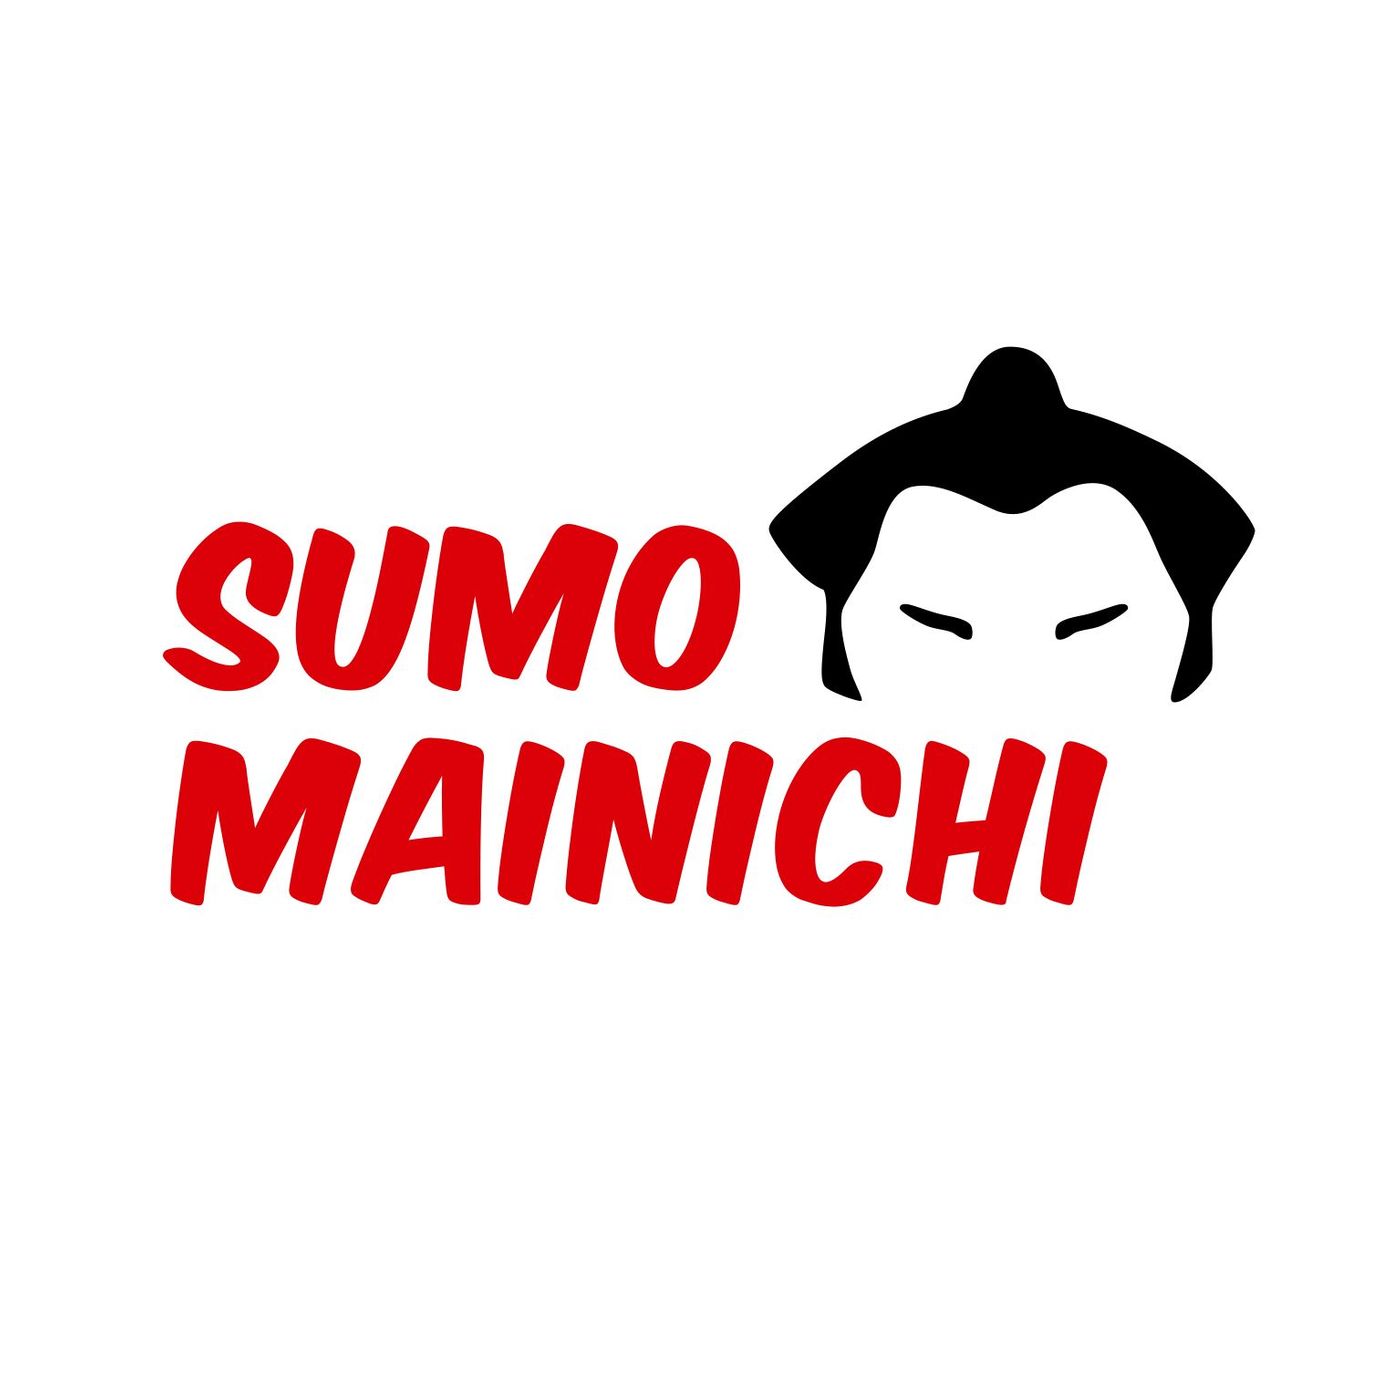 Sumo Mainichi - Day 14 - November 2021